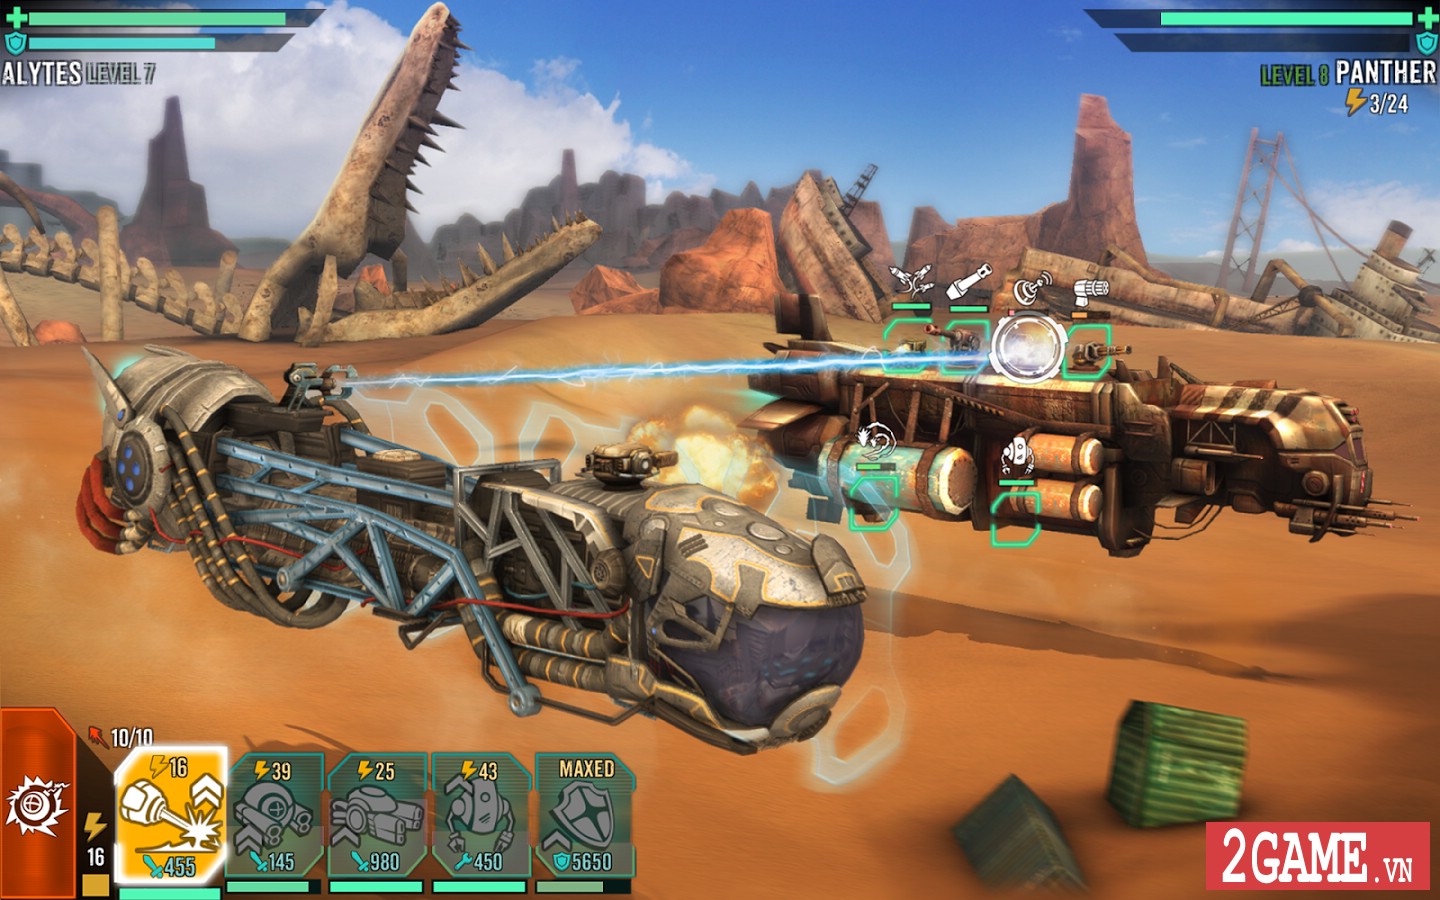 2game-Sandstorm-Pirate-Wars-mobile-anh-1.jpg (1440×900)